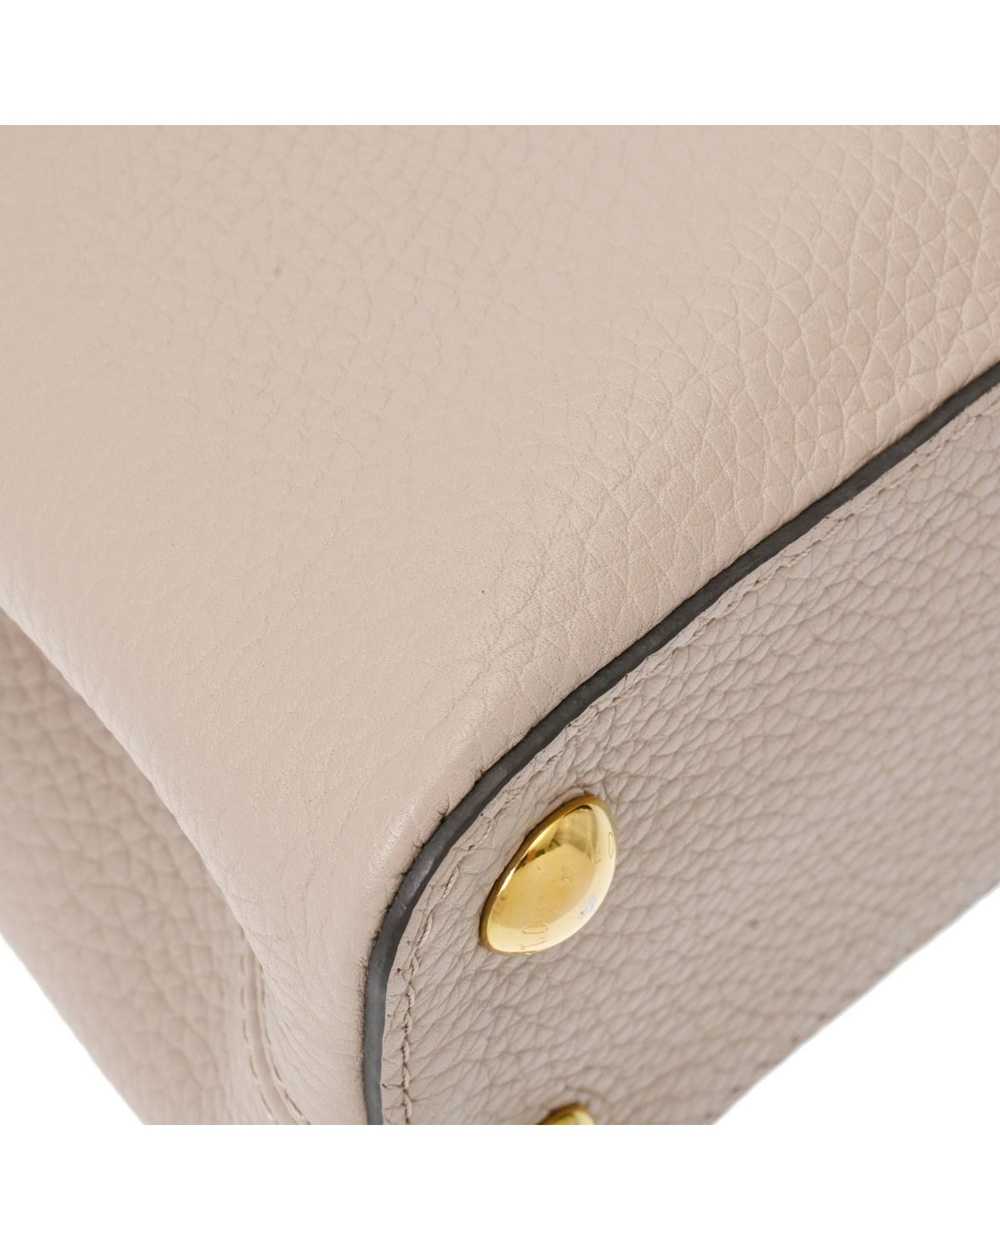 Louis Vuitton Sophisticated Leather Flap Handbag - image 8